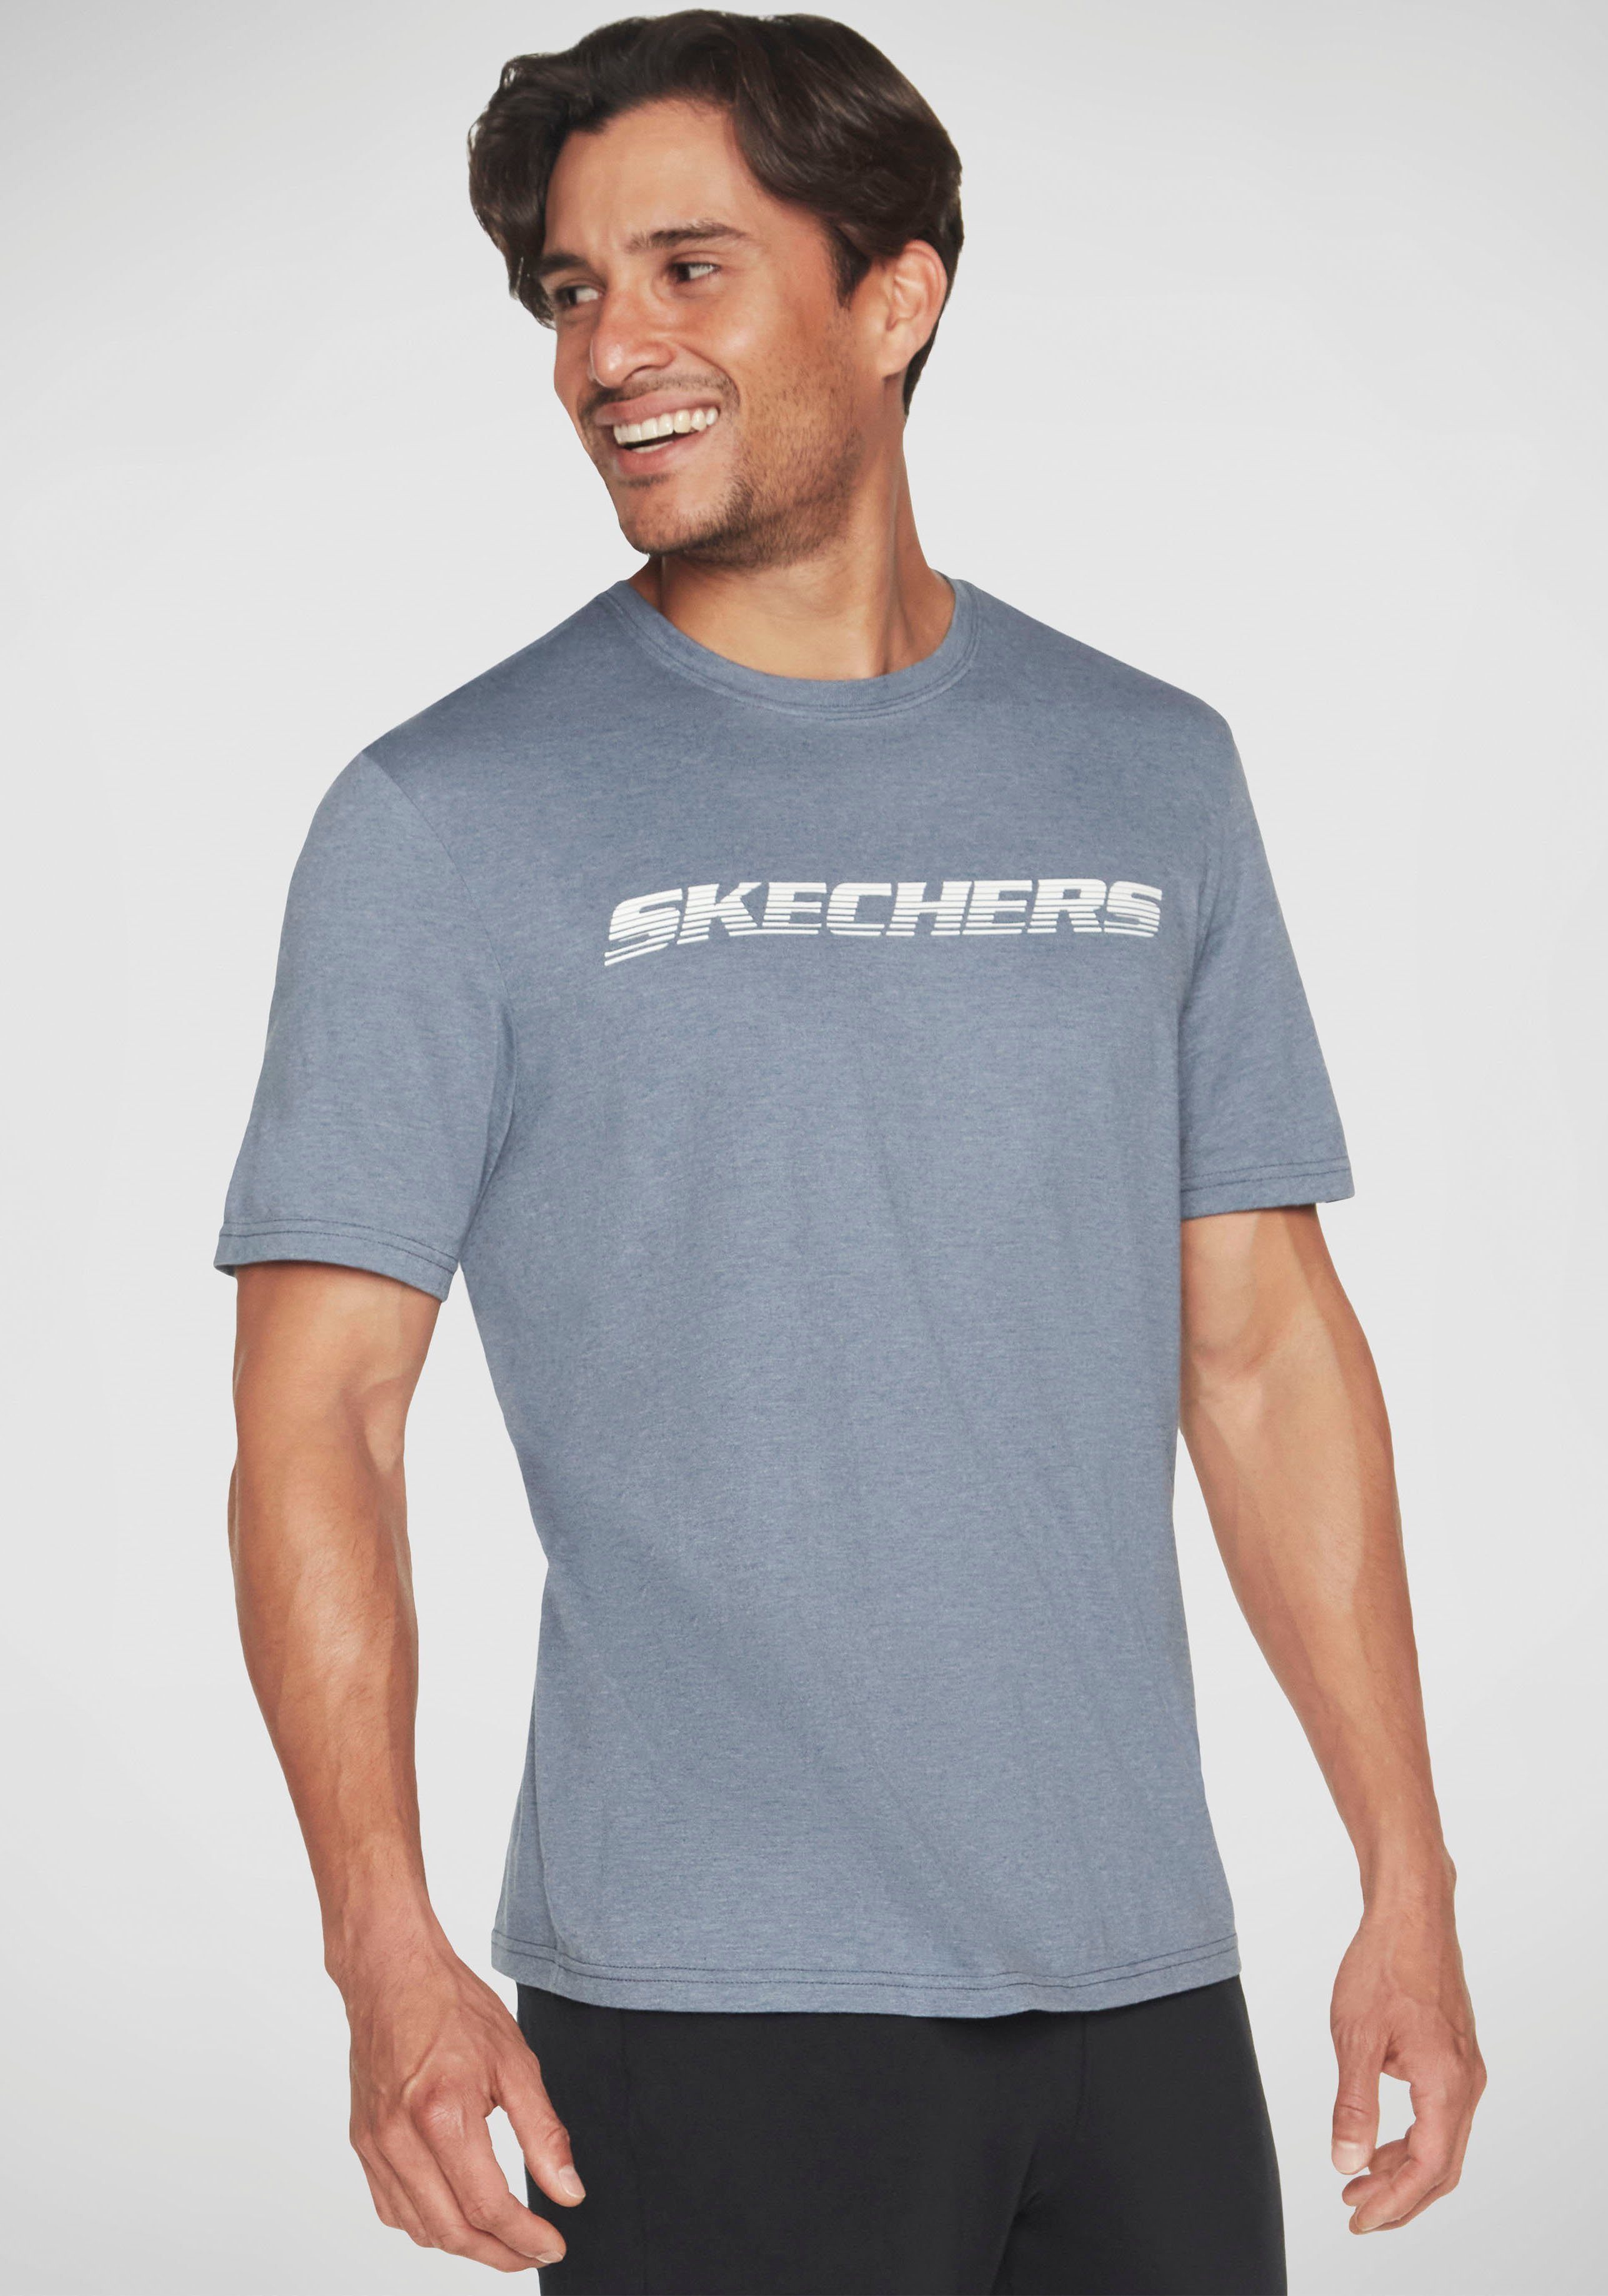 T-Shirt Skechers TEE MOTION blaugrau